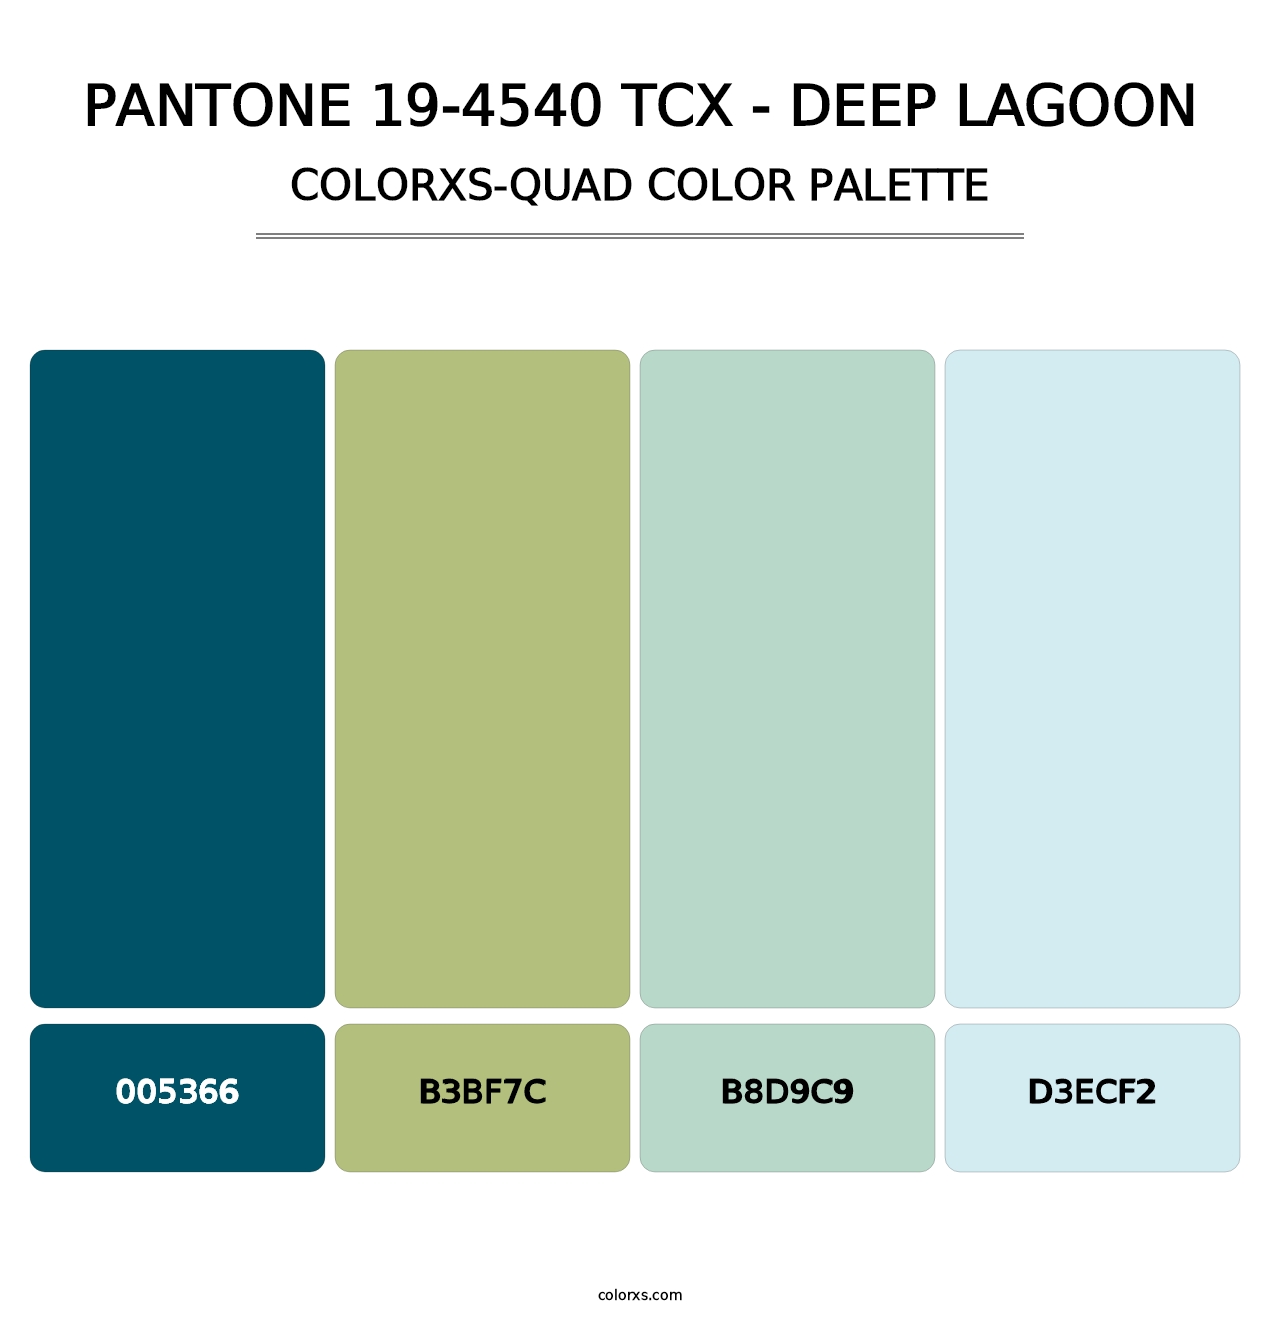 PANTONE 19-4540 TCX - Deep Lagoon - Colorxs Quad Palette